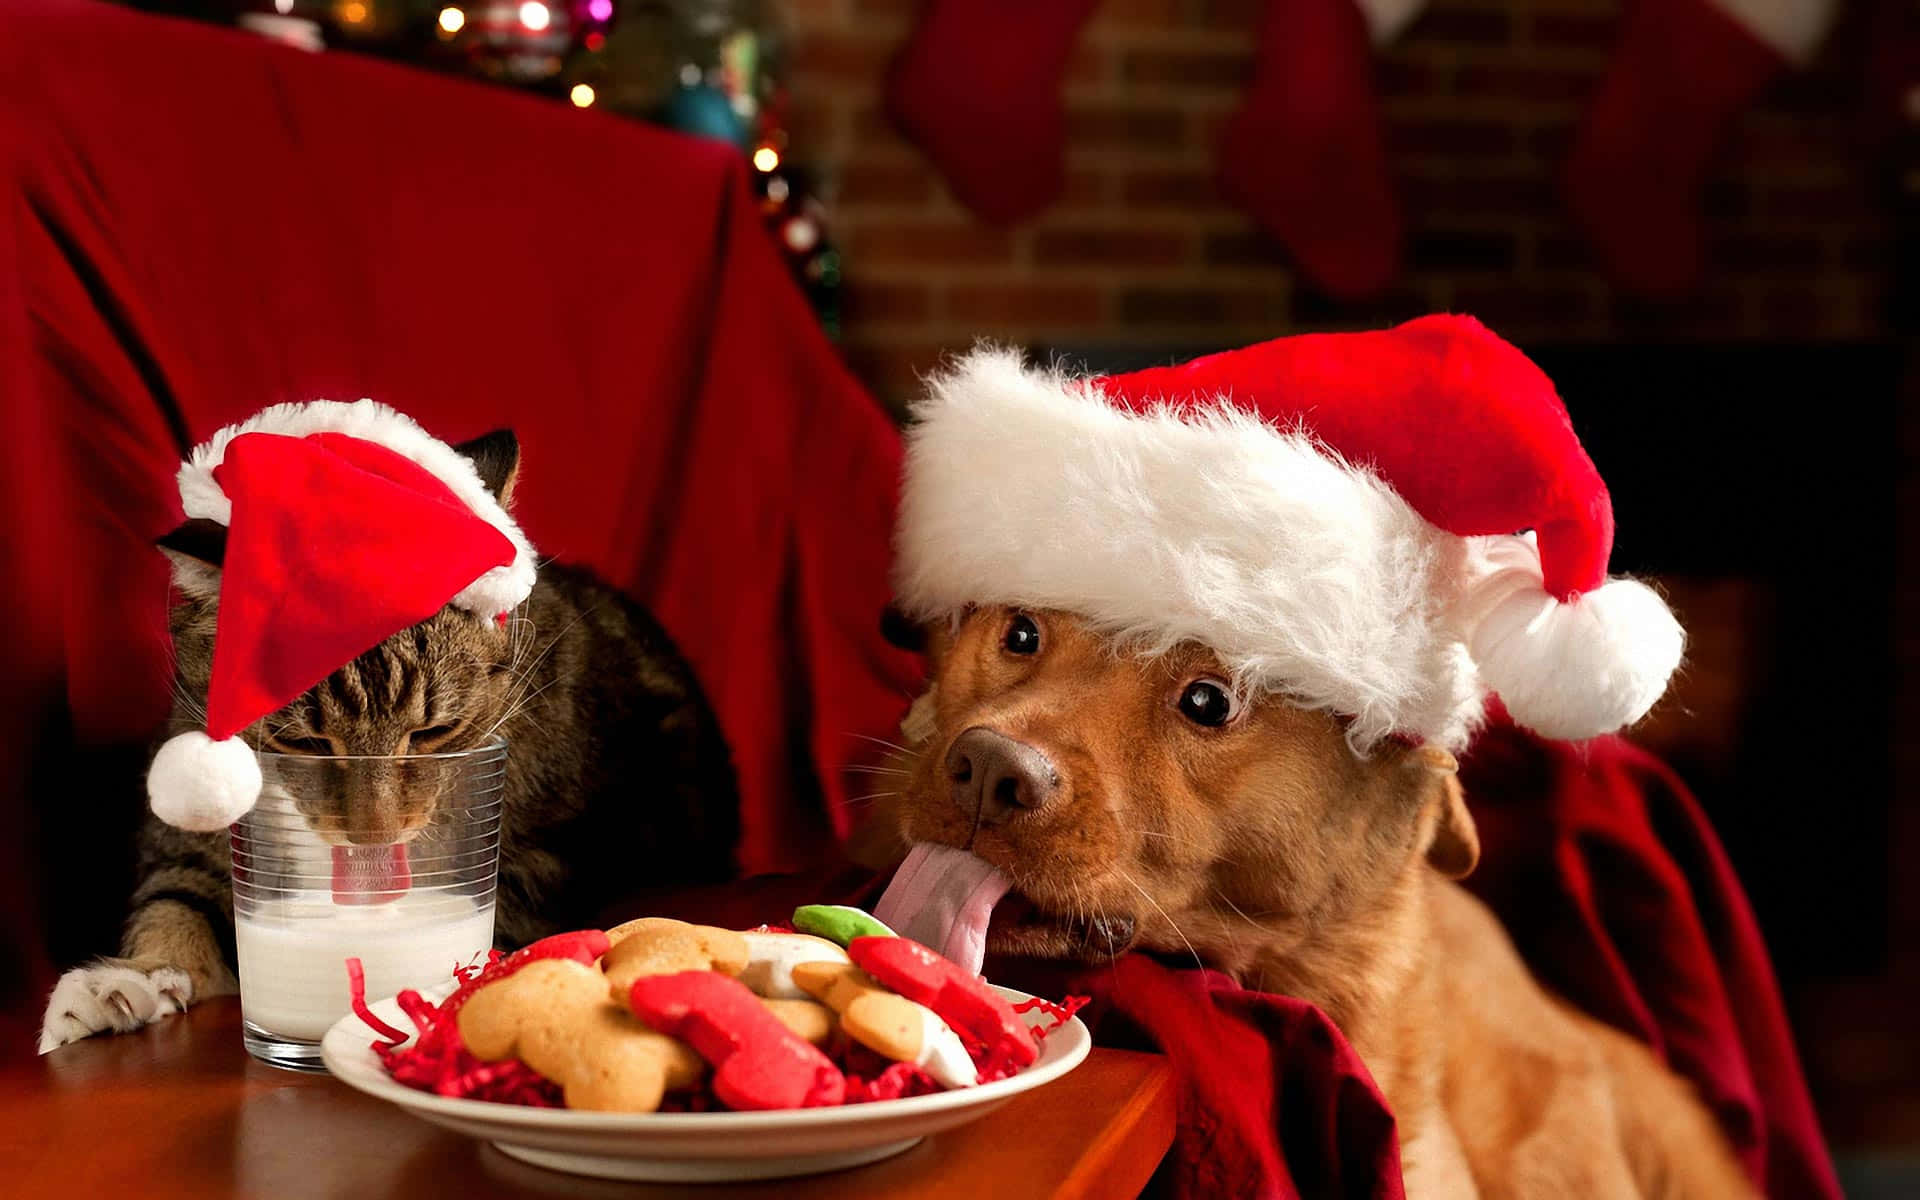 Imagende Un Perro Y Un Gato Comiendo Golosinas En Navidad.